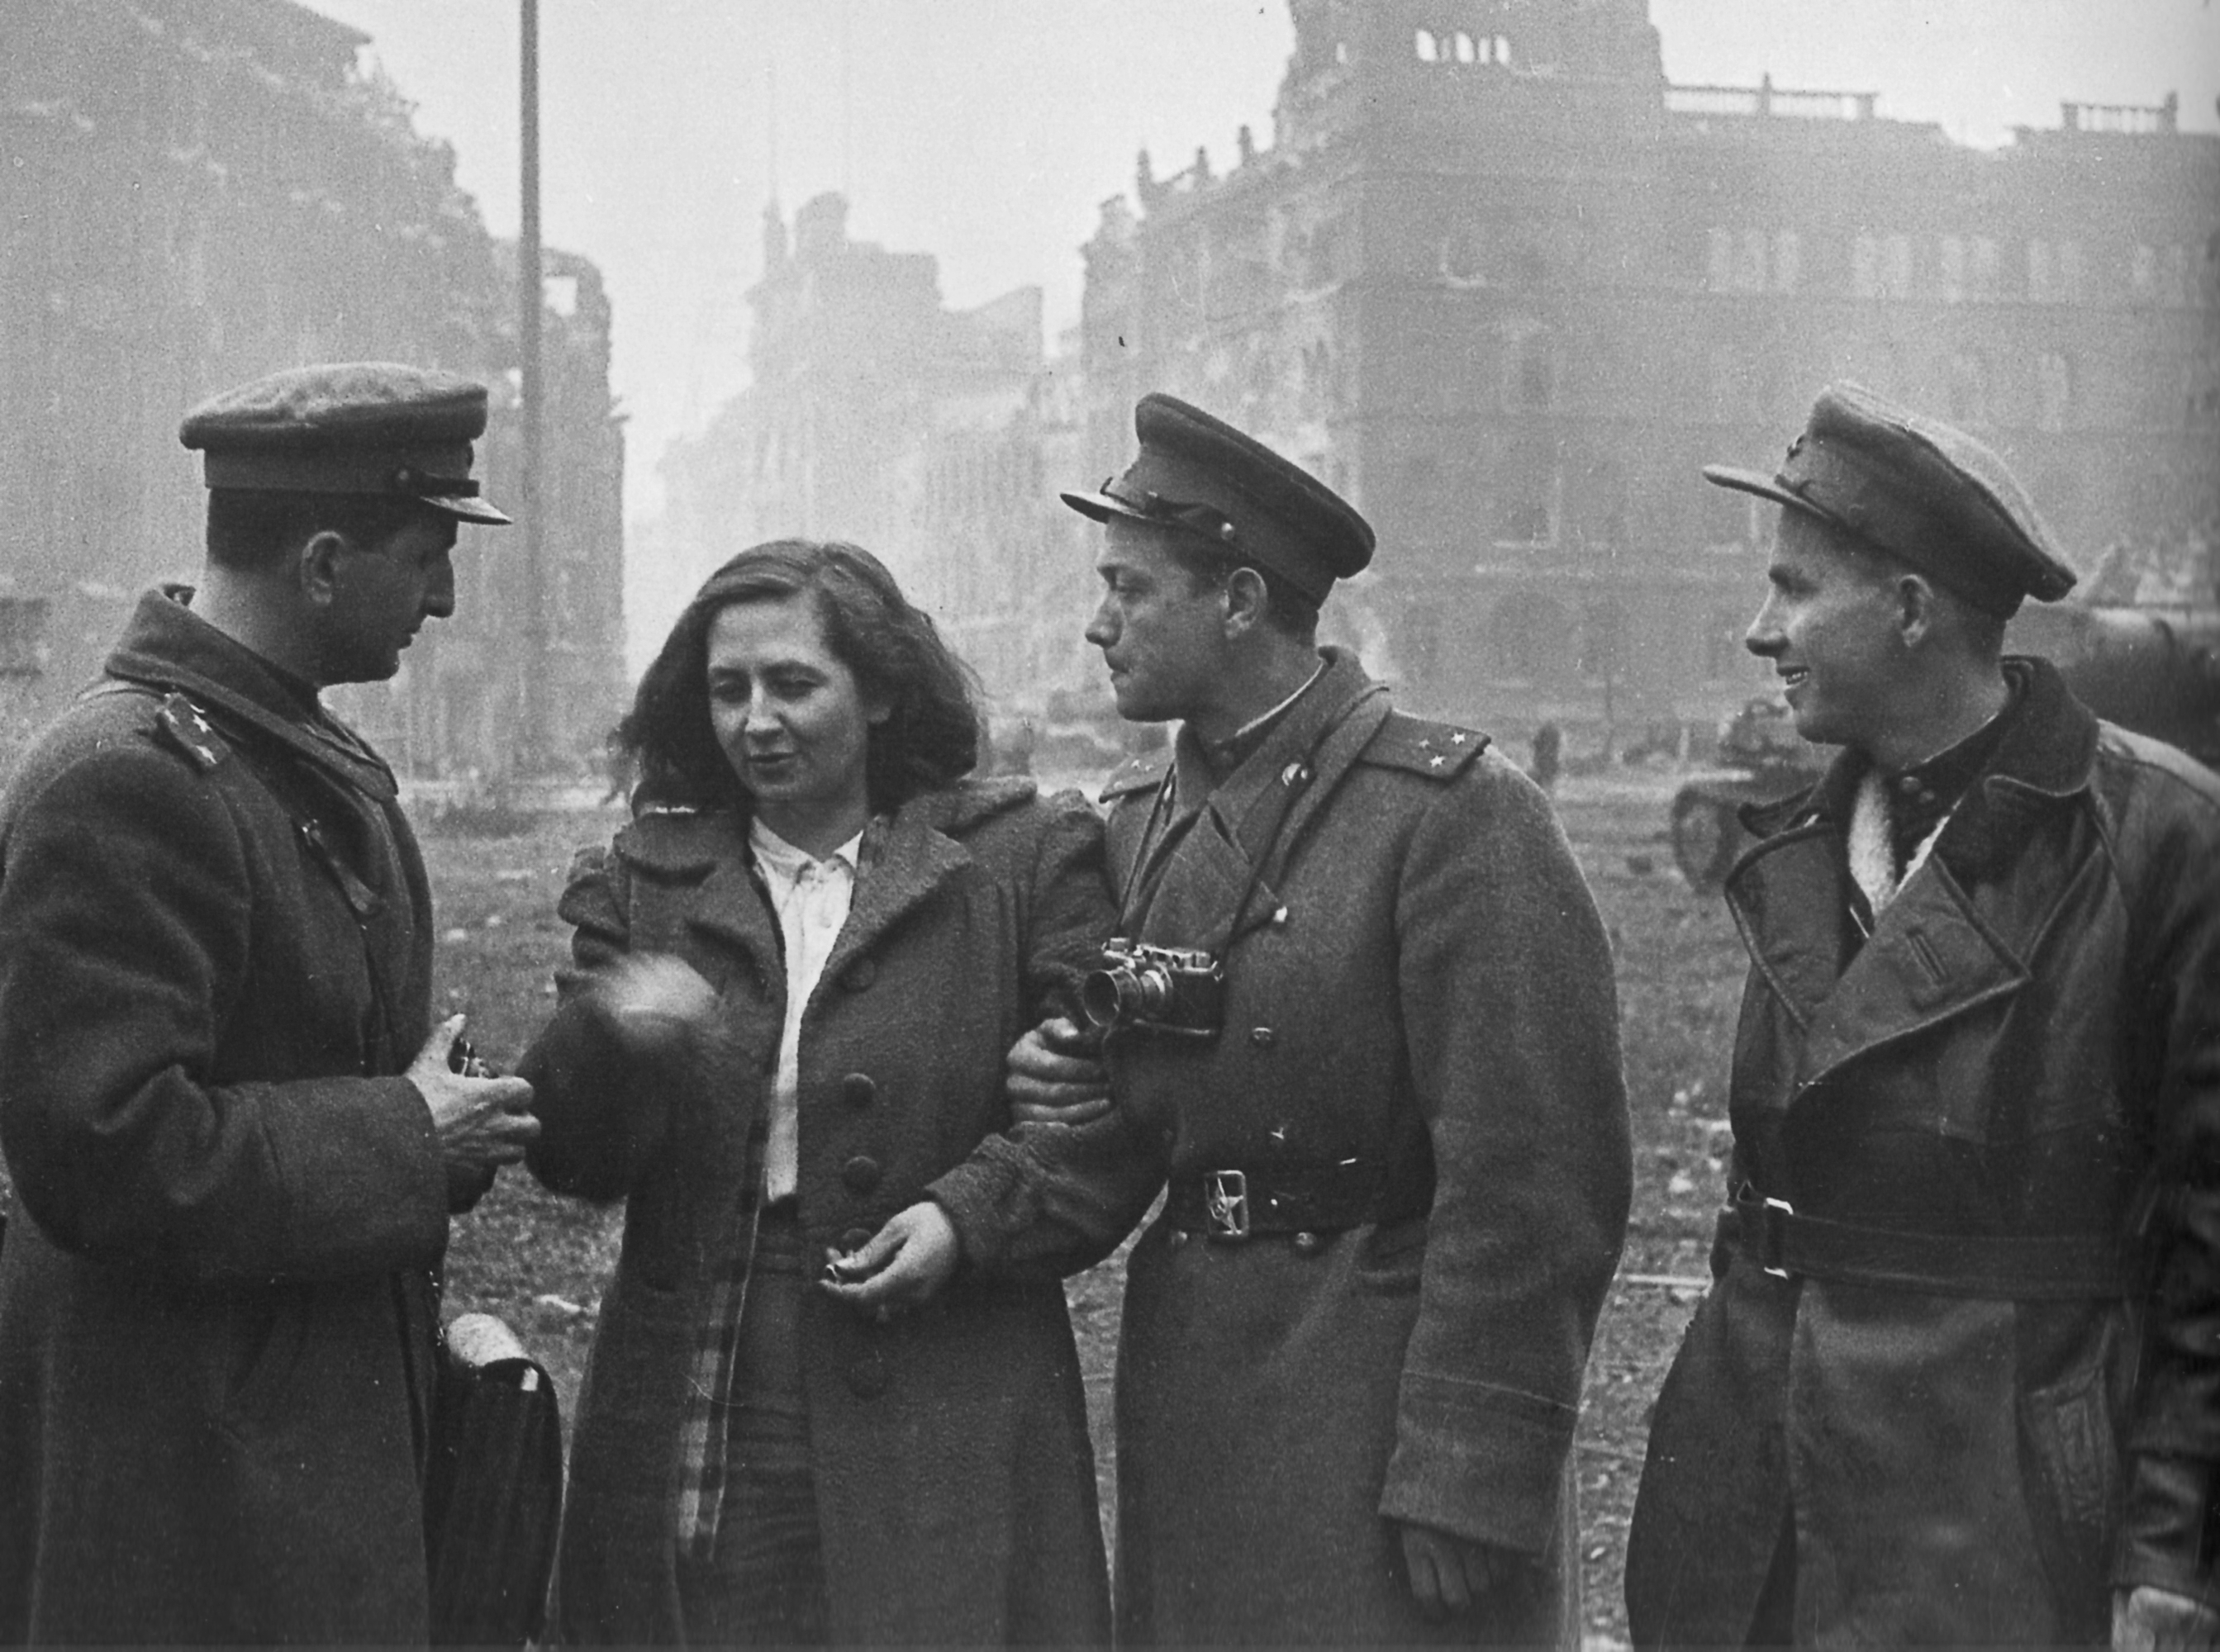 Красный встречаться. Немки в Германии в 1945 и советские солдаты. Немецкие женщины в Берлине 1945. Русские в Берлине 1945. Советские солдаты в Берлине 1945 года.